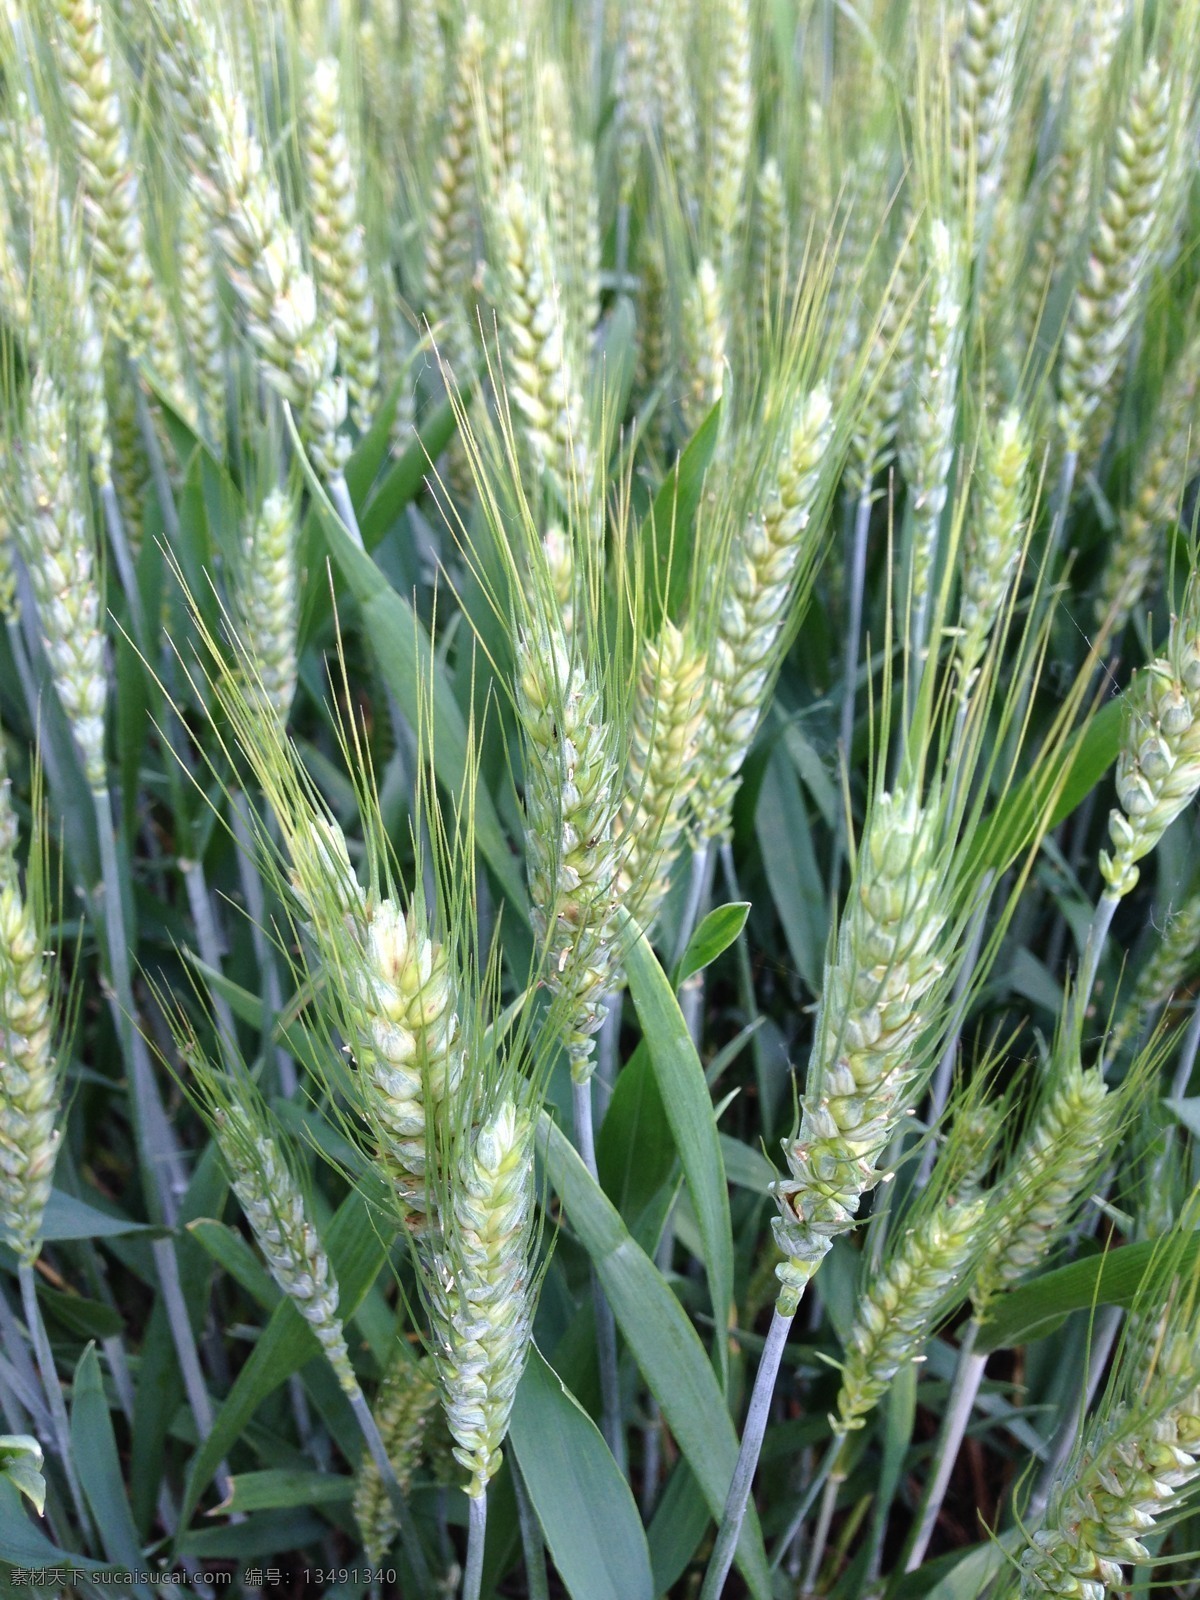 麦子 麦田 麦花 未成熟的麦子 绿色田野 绿色的麦子 麦叶 麦芽 麦杆子 绿色植物 绿色粮食 小麦 大麦 麦子素材 小麦素材 自然景观 田园风光